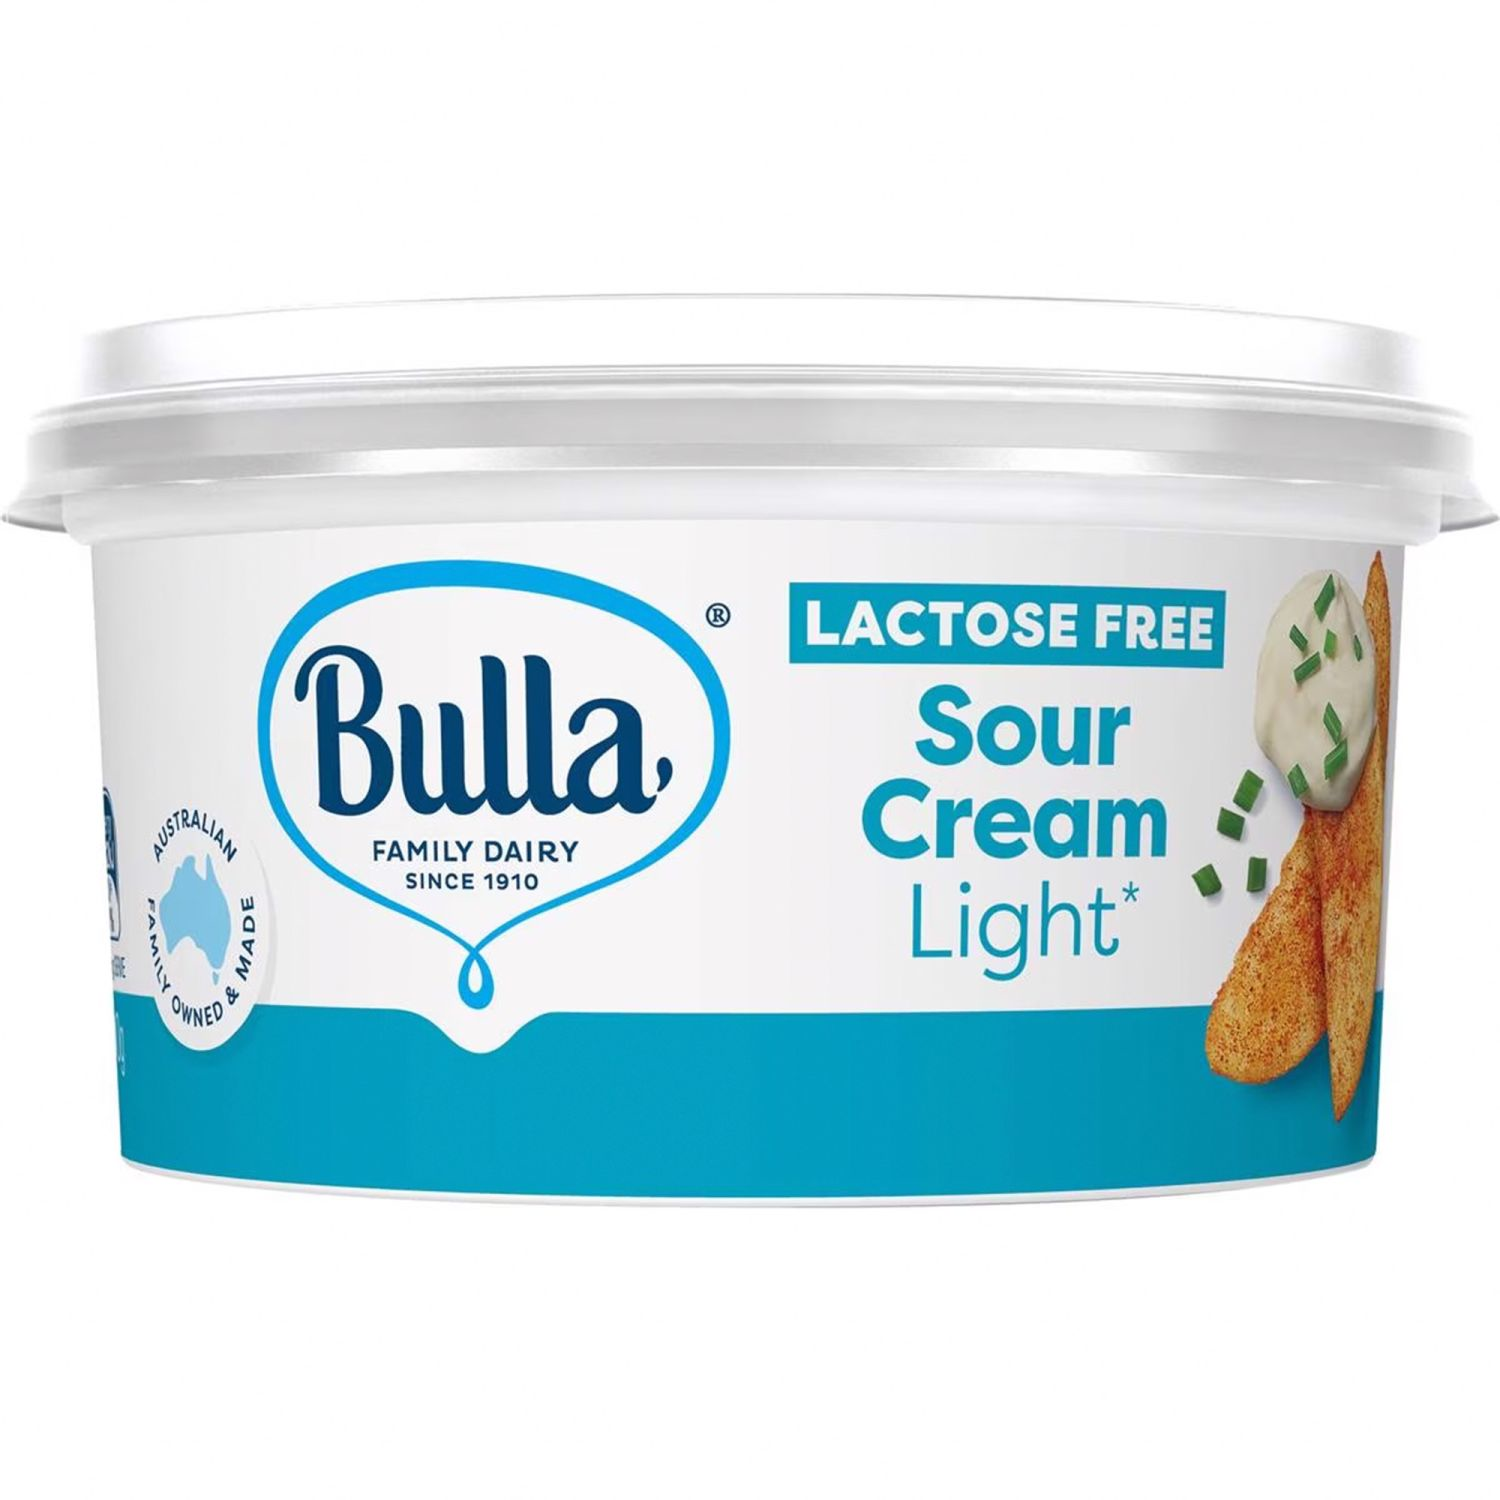 Bulla Sour Cream Light Lactose Free, 200 Gram